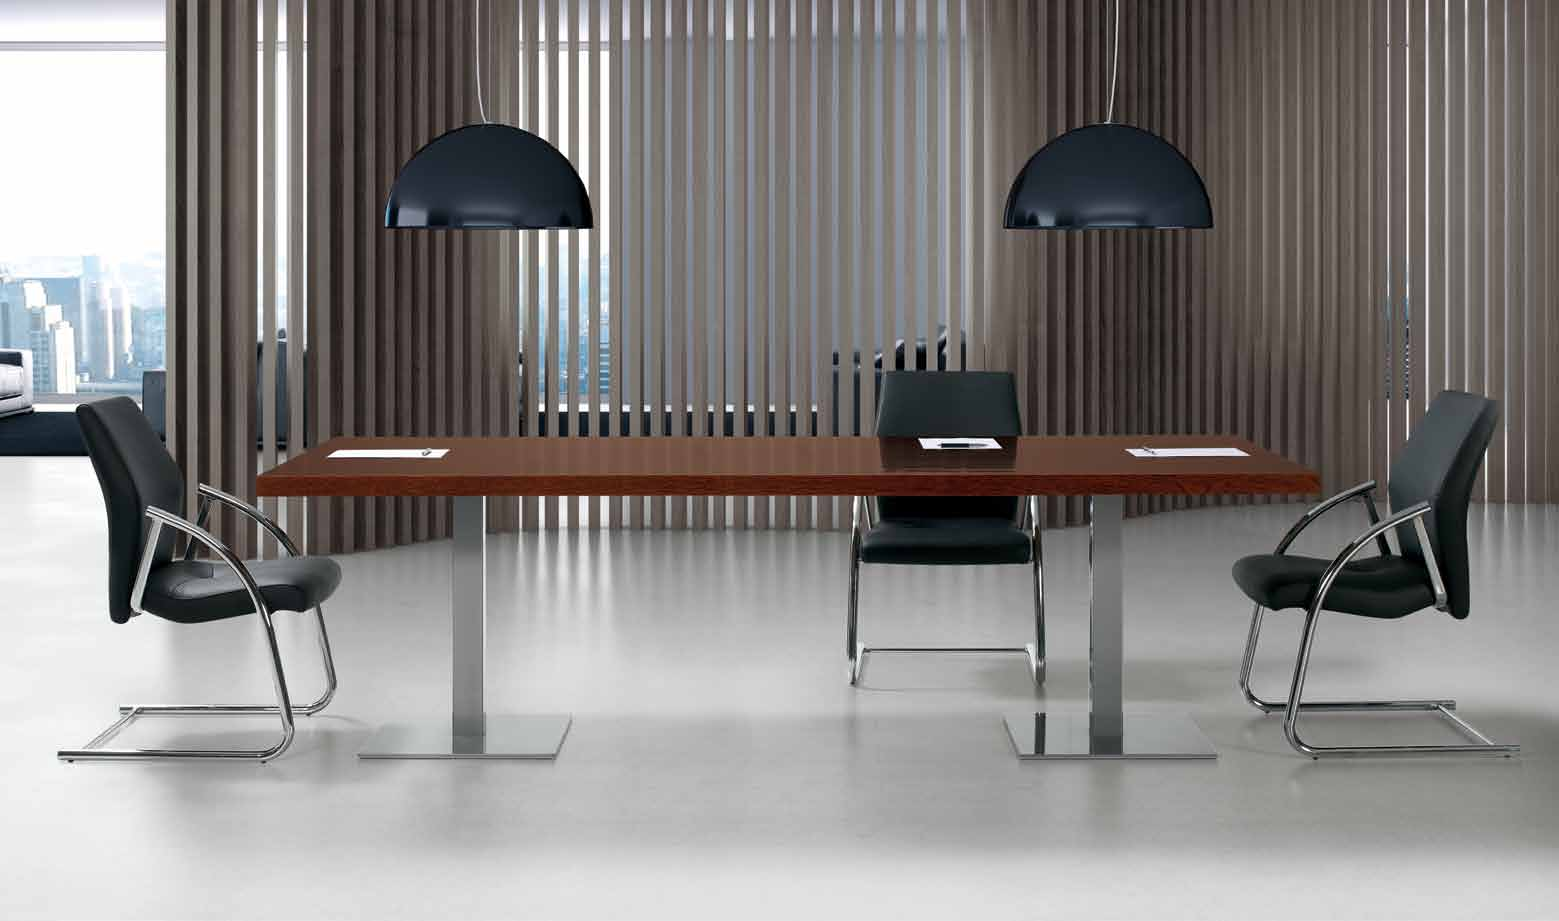 Mesa de reunião. Solução moderna para salas de reuniões, que promove o trabalho em grupo.